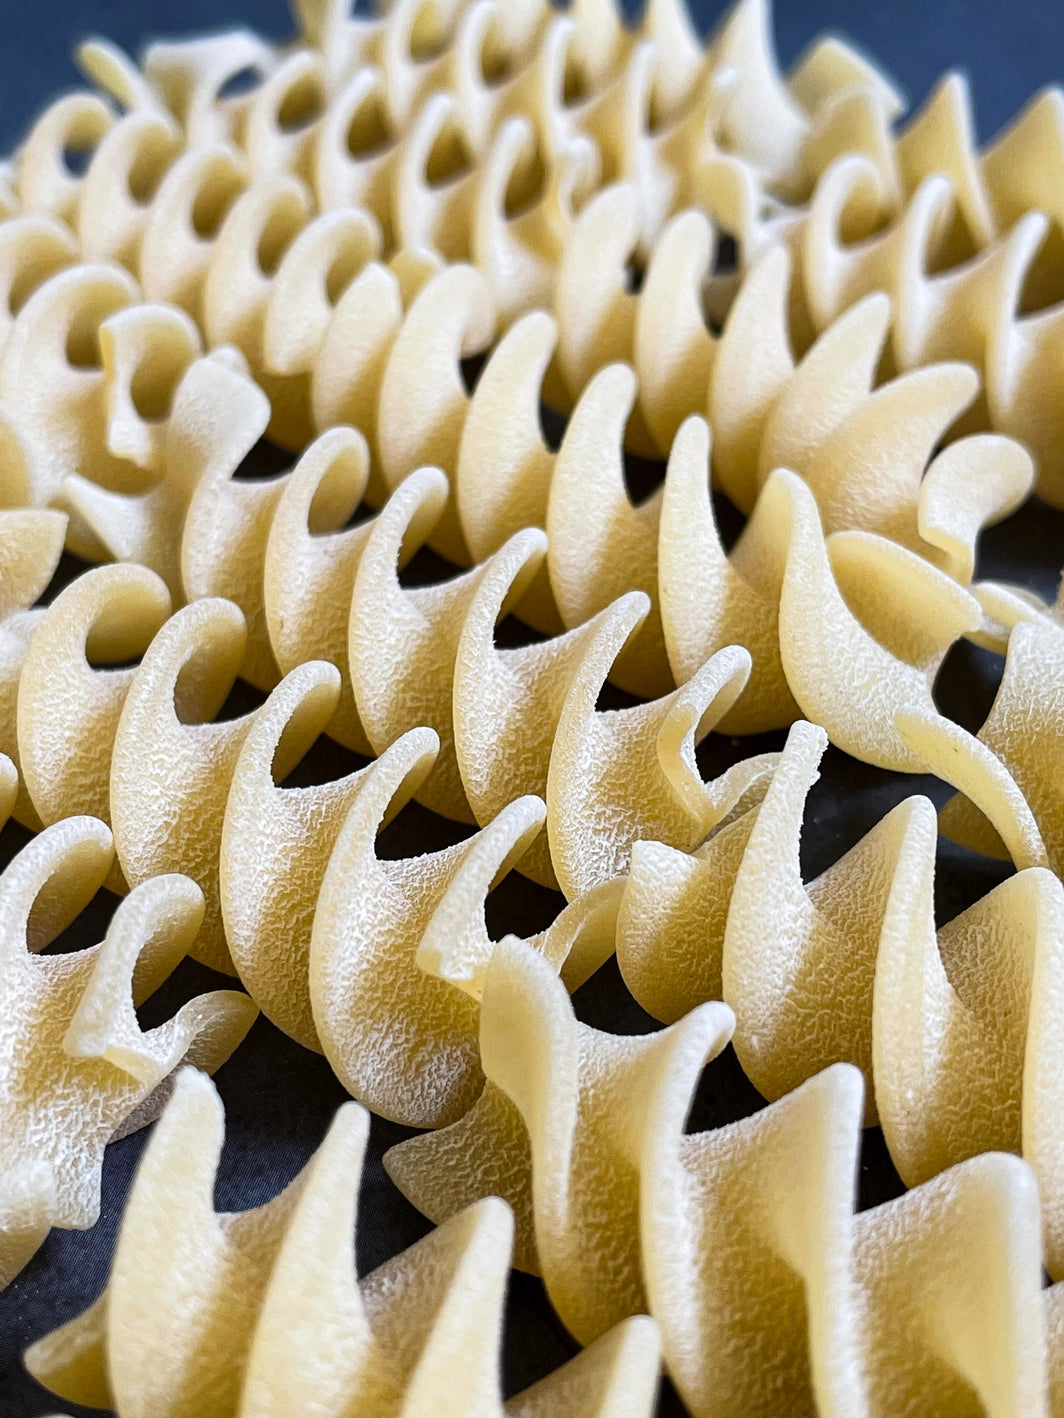 Fussilloni - 100% Italian artisanal pasta